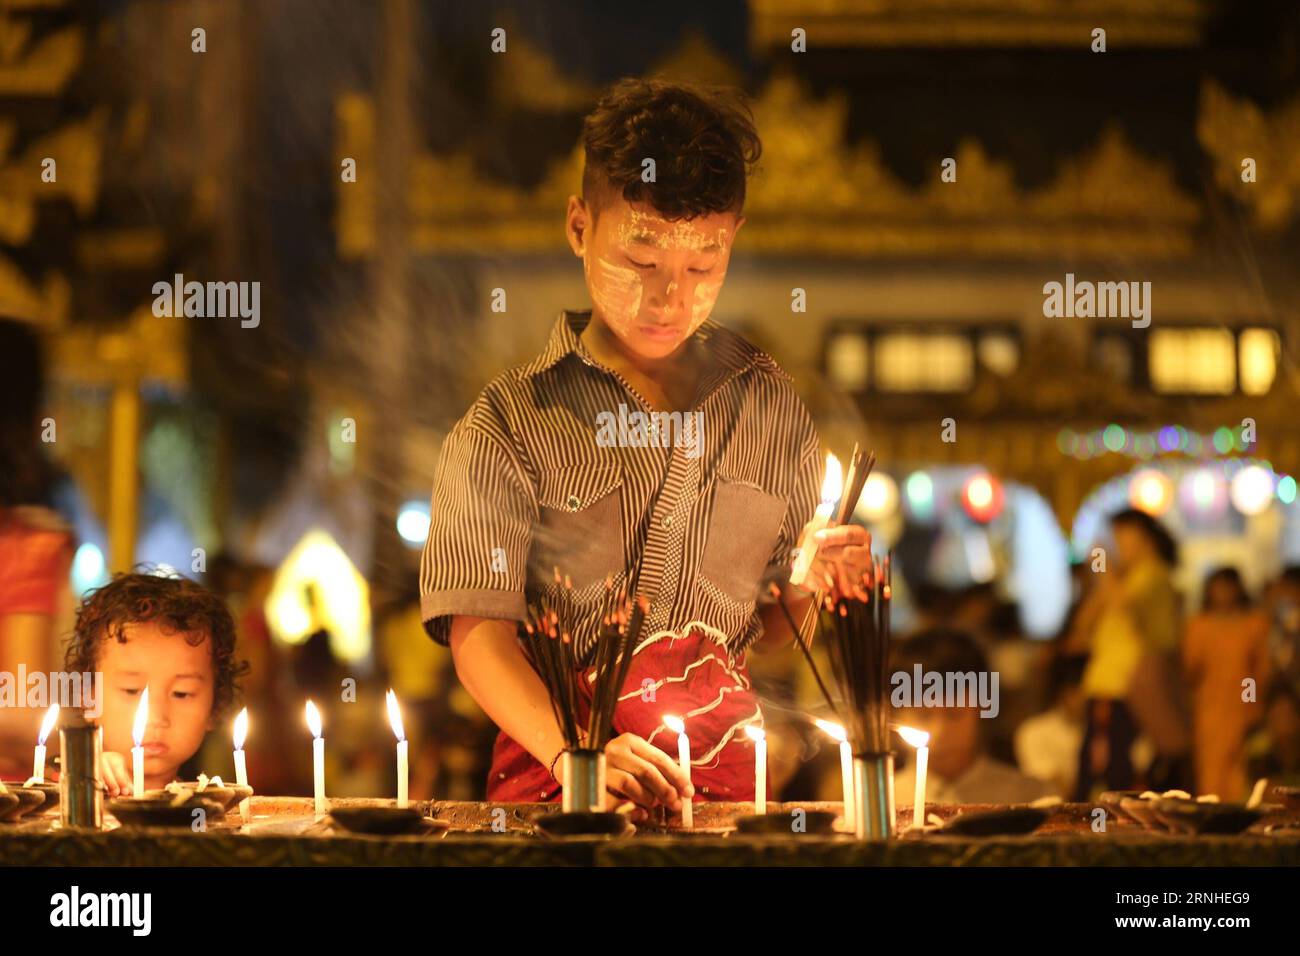 Ein Junge zündet Kerzen auf Myanmars traditionellem Tazaungdaing-Festival in der Shwedagon-Pagode in Yangon, Myanmar, 13. November 2016 an. Das Tazaungdaing Festival, auch bekannt als das Festival der Lichter, das im achten Monat des traditionellen myanmarischen Kalenders auf den Vollmondtag fällt, wird als Nationalfeiertag in Myanmar gefeiert und markiert das Ende der Regenzeit. ) (zw) MYANMAR-YANGON-TAZAUNGDAING FESTIVAL UxAung PUBLICATIONxNOTxINxCHN A Boy Lights Candles ON Myanmar S Traditional Tazaungdaing Festival in der Shwedagon Pagoda in Yangon Myanmar 13. November 2016 das Tazaungdaing Festival so k Stockfoto